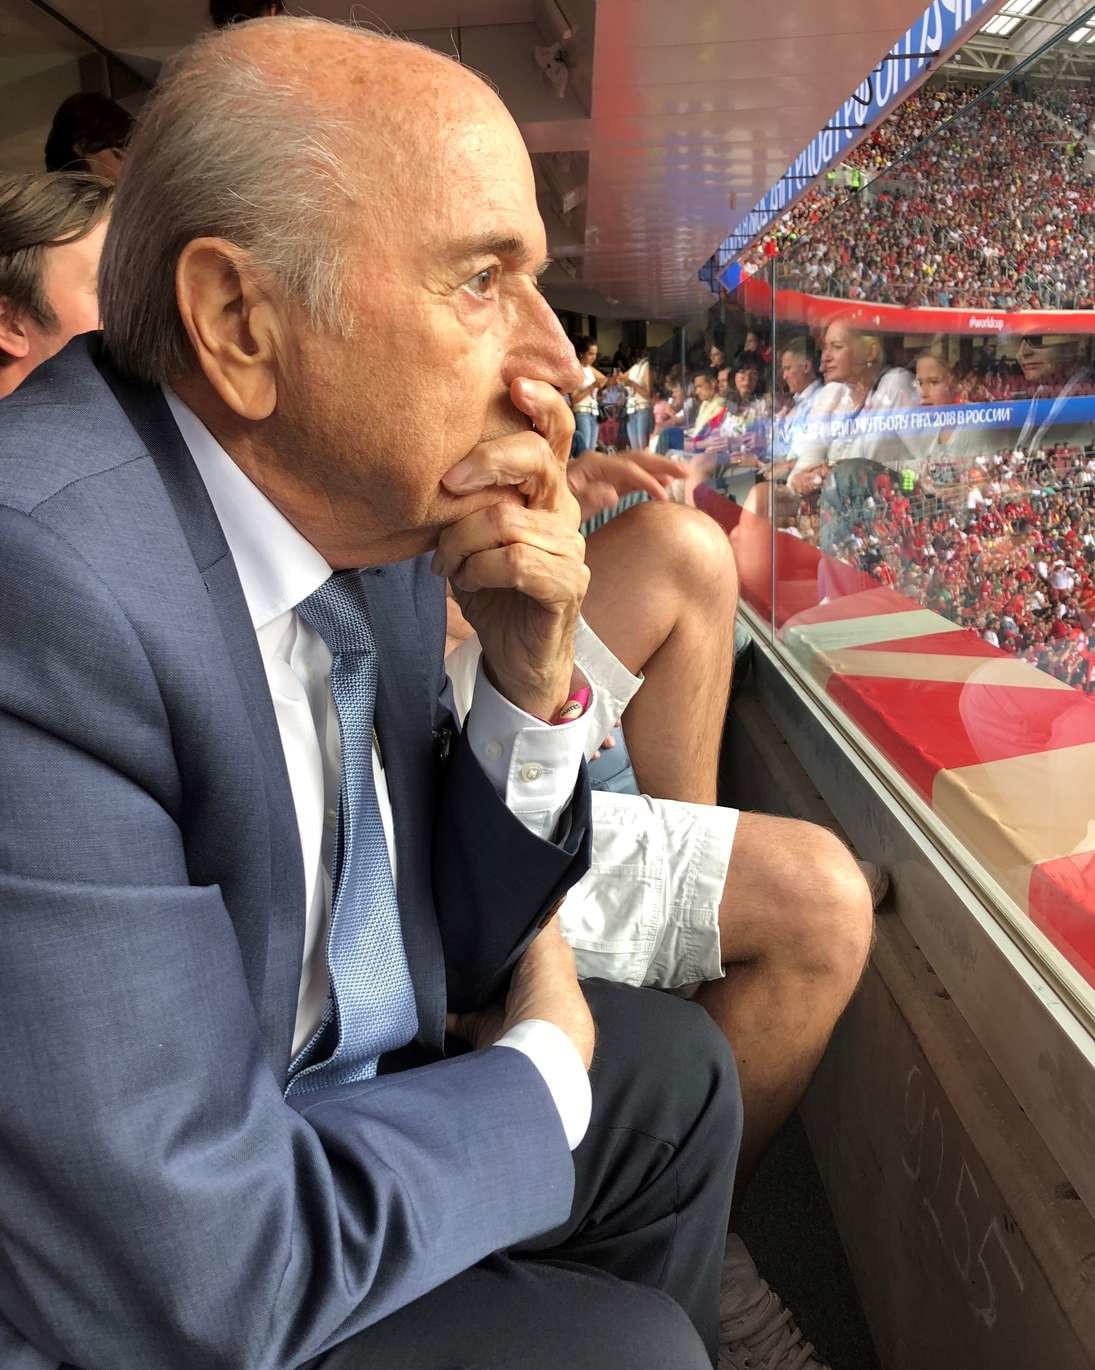 Unter den Zuschauern befindet sich auch Sepp Blatter, der gestürzte Fifa-Präsident. Er war von seinem Freund Wladimir Putin eingeladen worden. (Foto: Keystone)